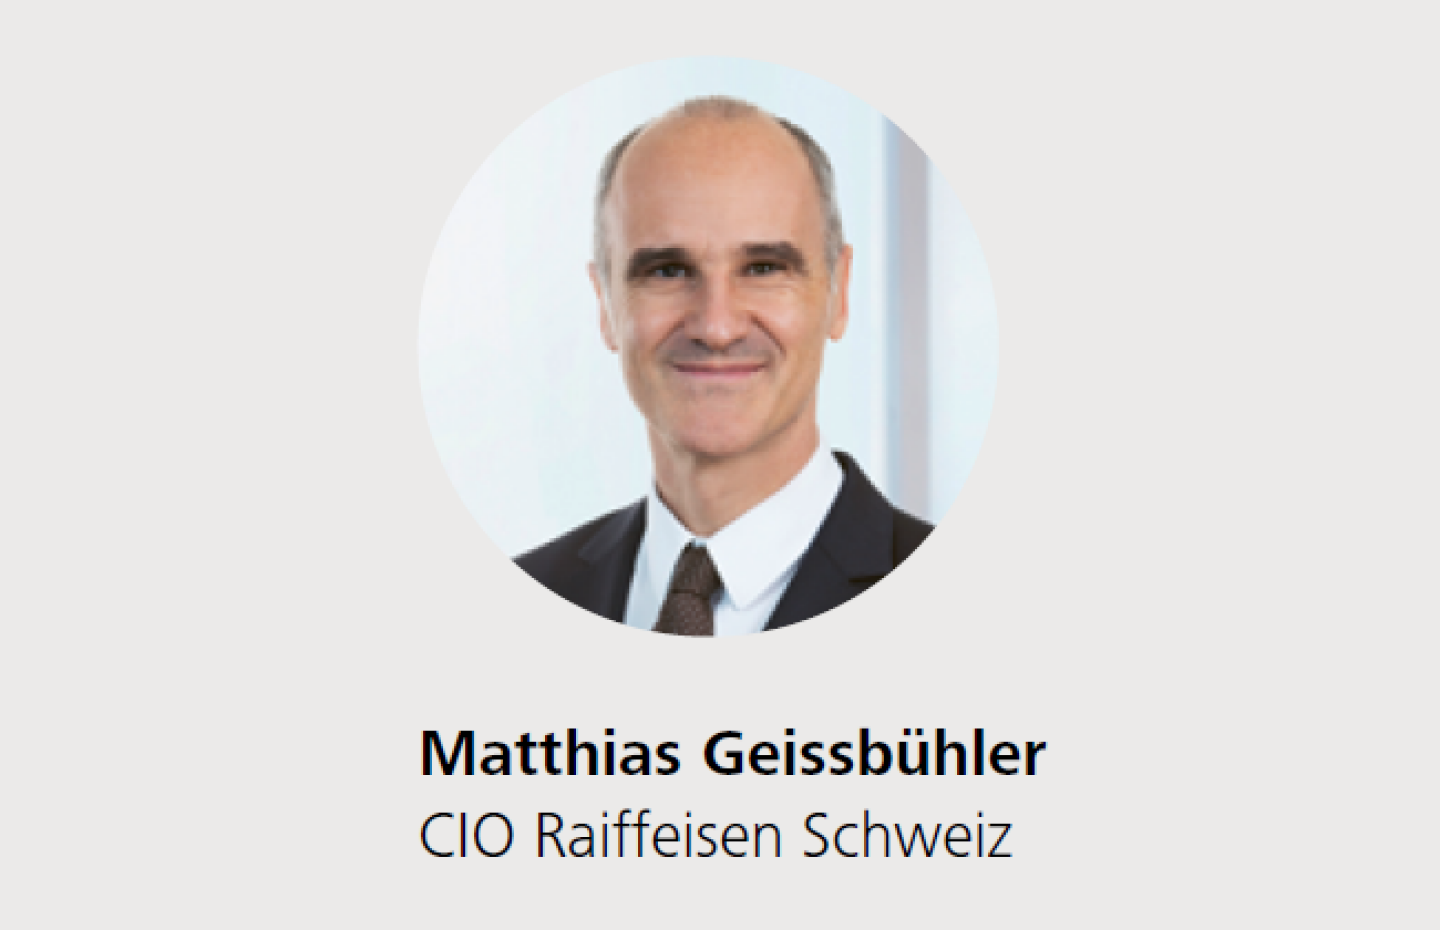 Matthias Geissbühler, CIO Raiffeisen Schweiz